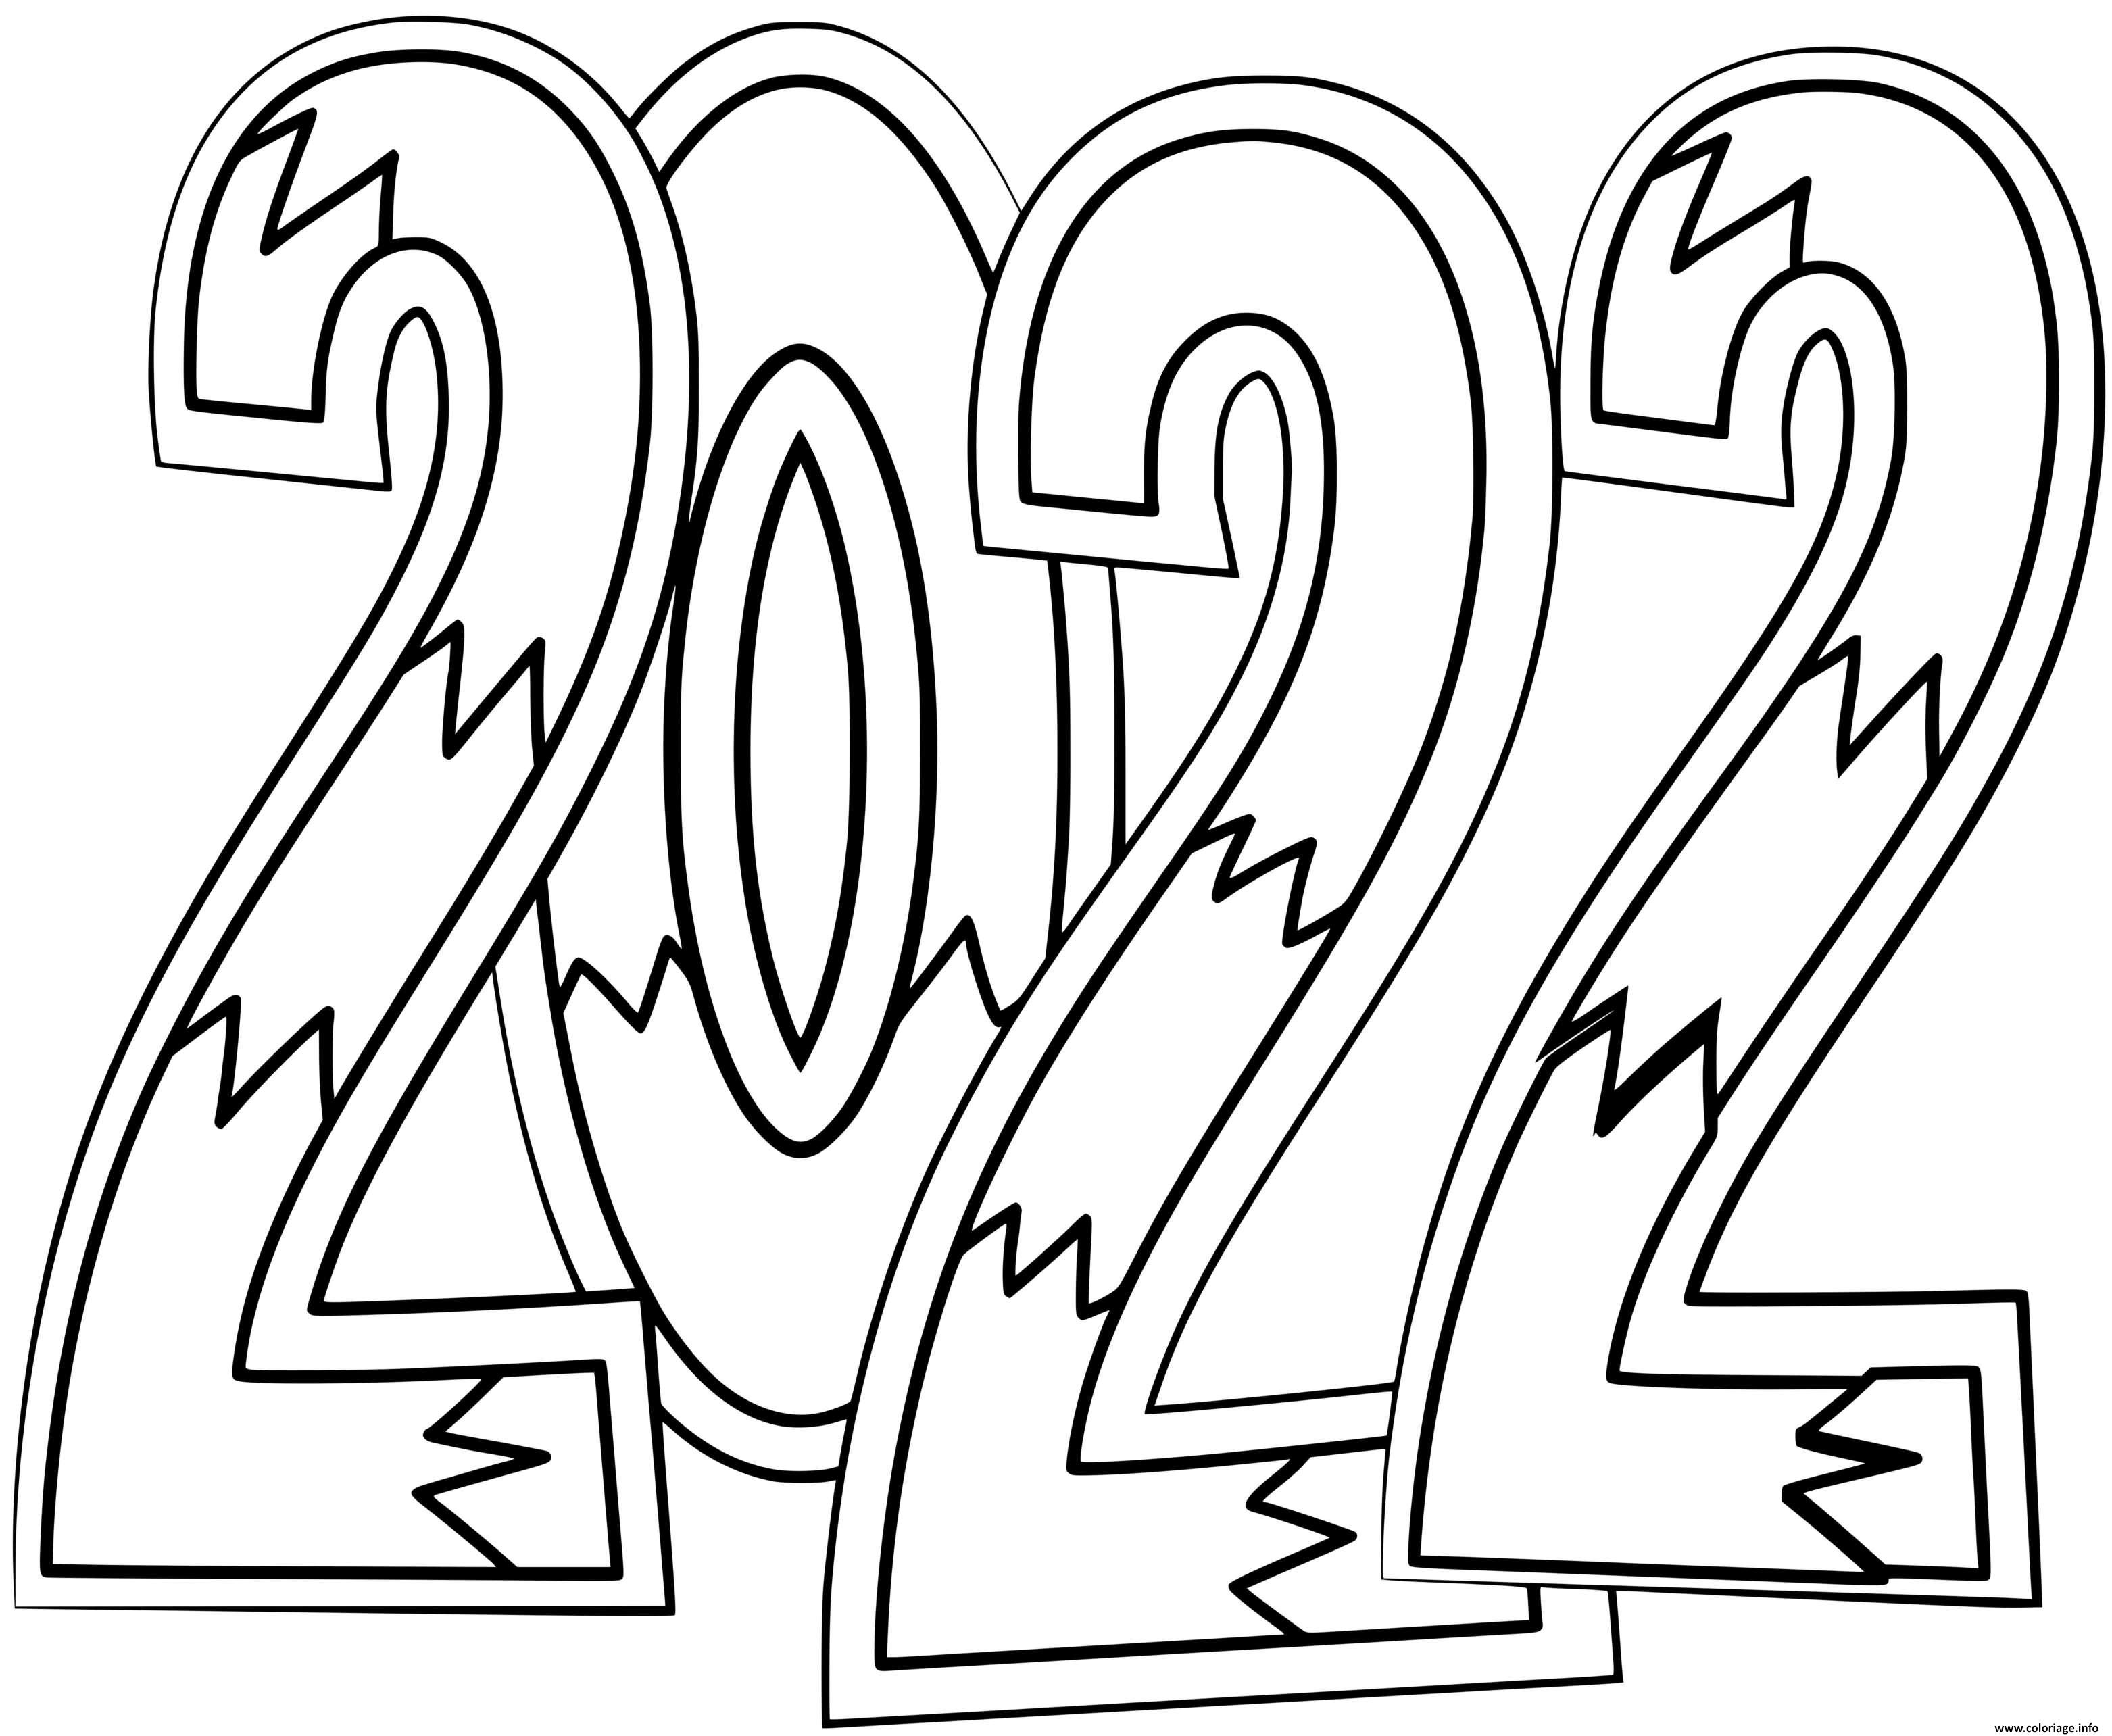 Dessin 2022 new year doodle by supercoloring Coloriage Gratuit à Imprimer